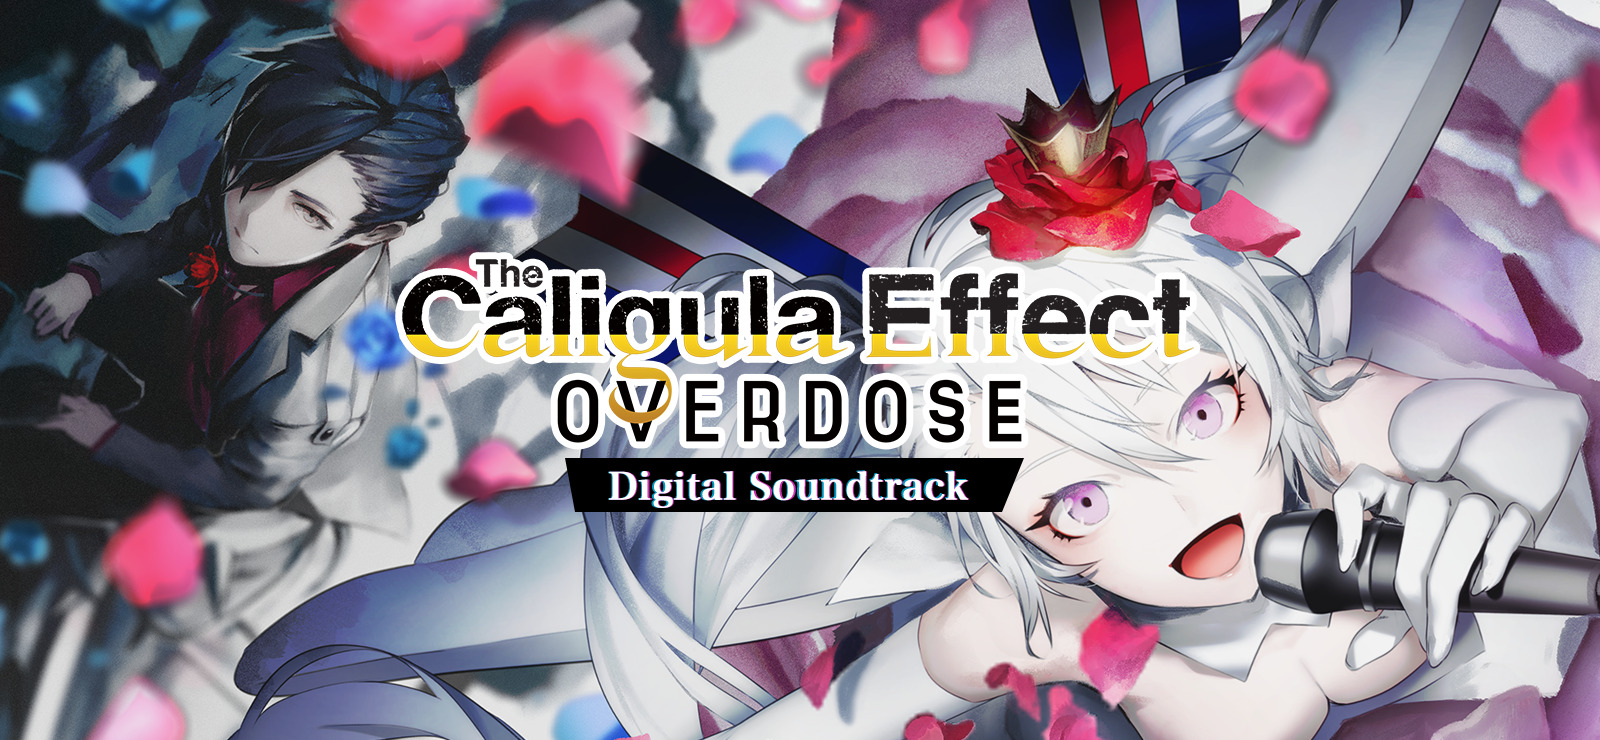 The Caligula Effect: Overdose - Digital Soundtrack DLC Steam CD Key, 4.36 usd